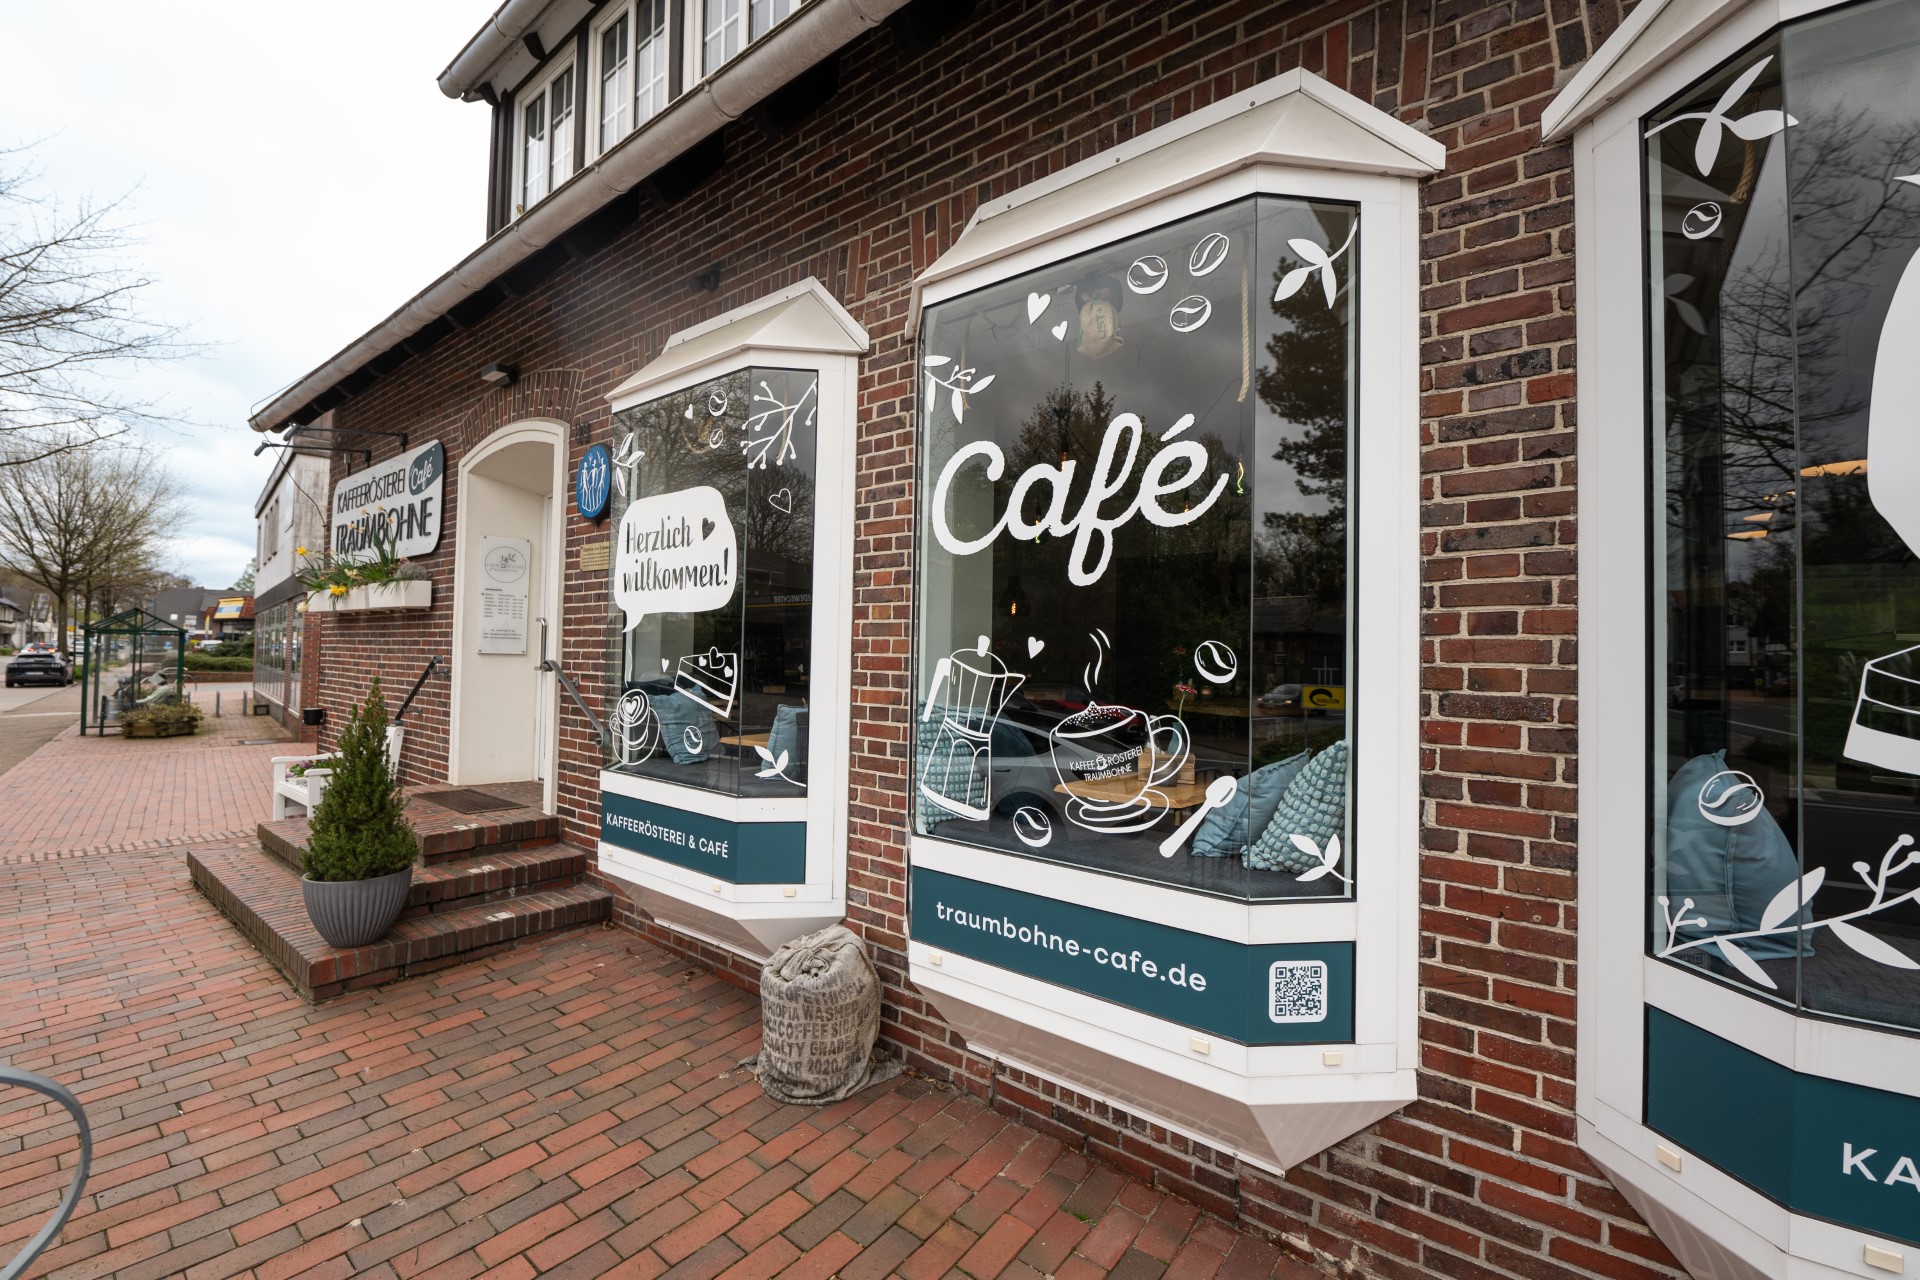 Wunderschöne Außenfassade eines Cafégebäudes mit einladender Fensterbeschriftung